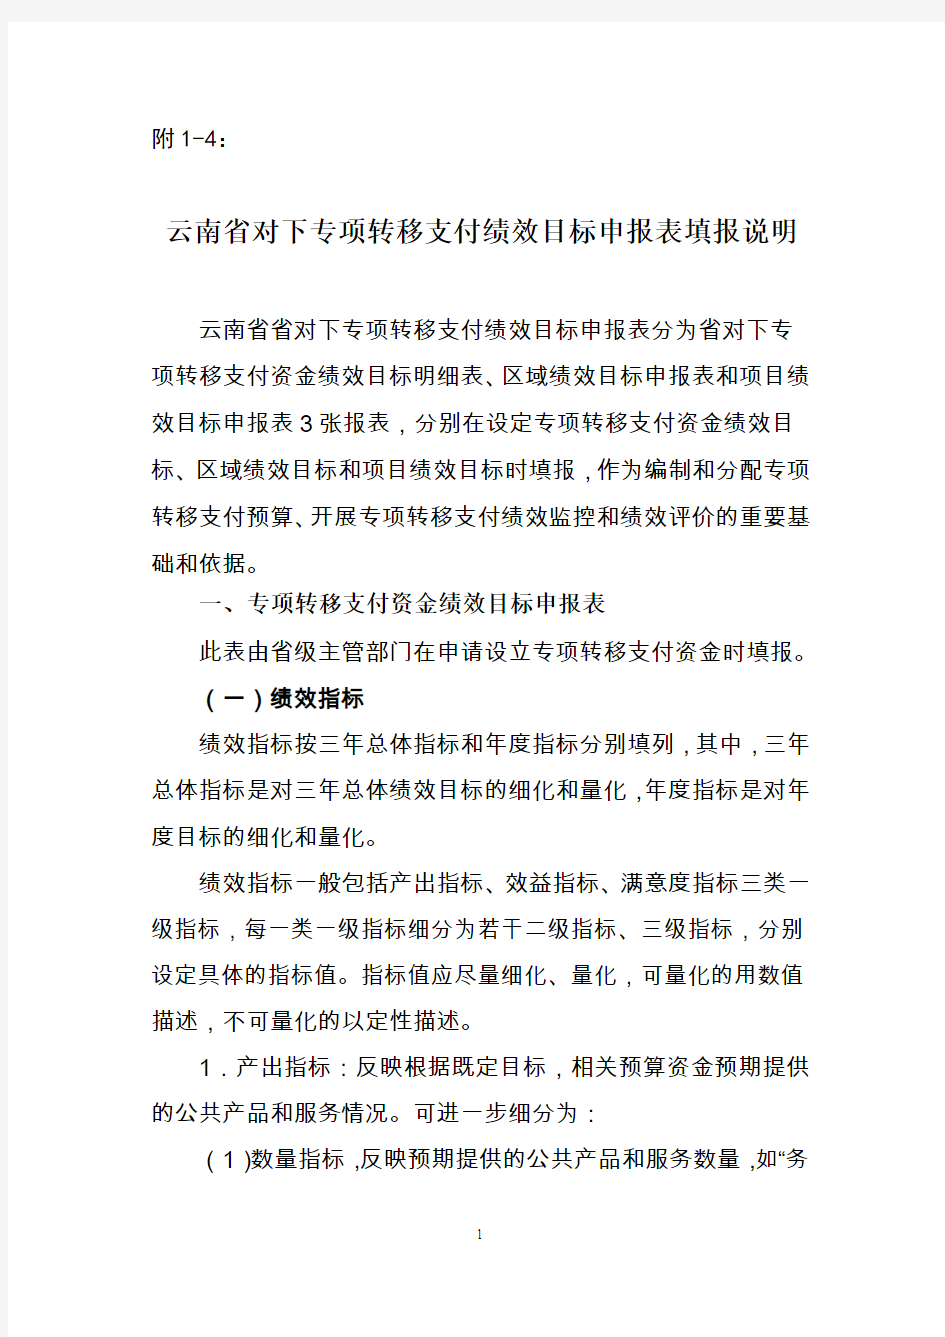 附1云南省对下专项转移支付绩效目标申报表填报说明